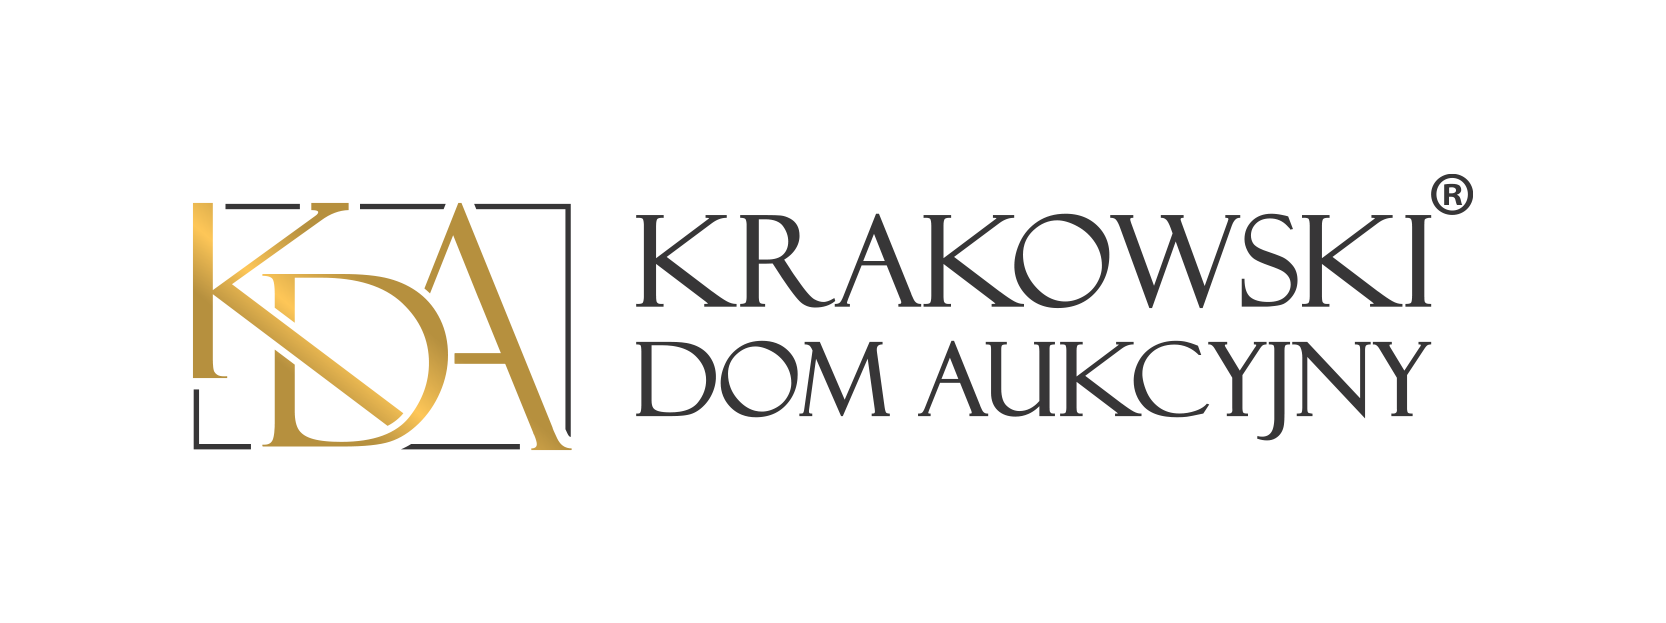 Krakowski Dom Aukcyjny